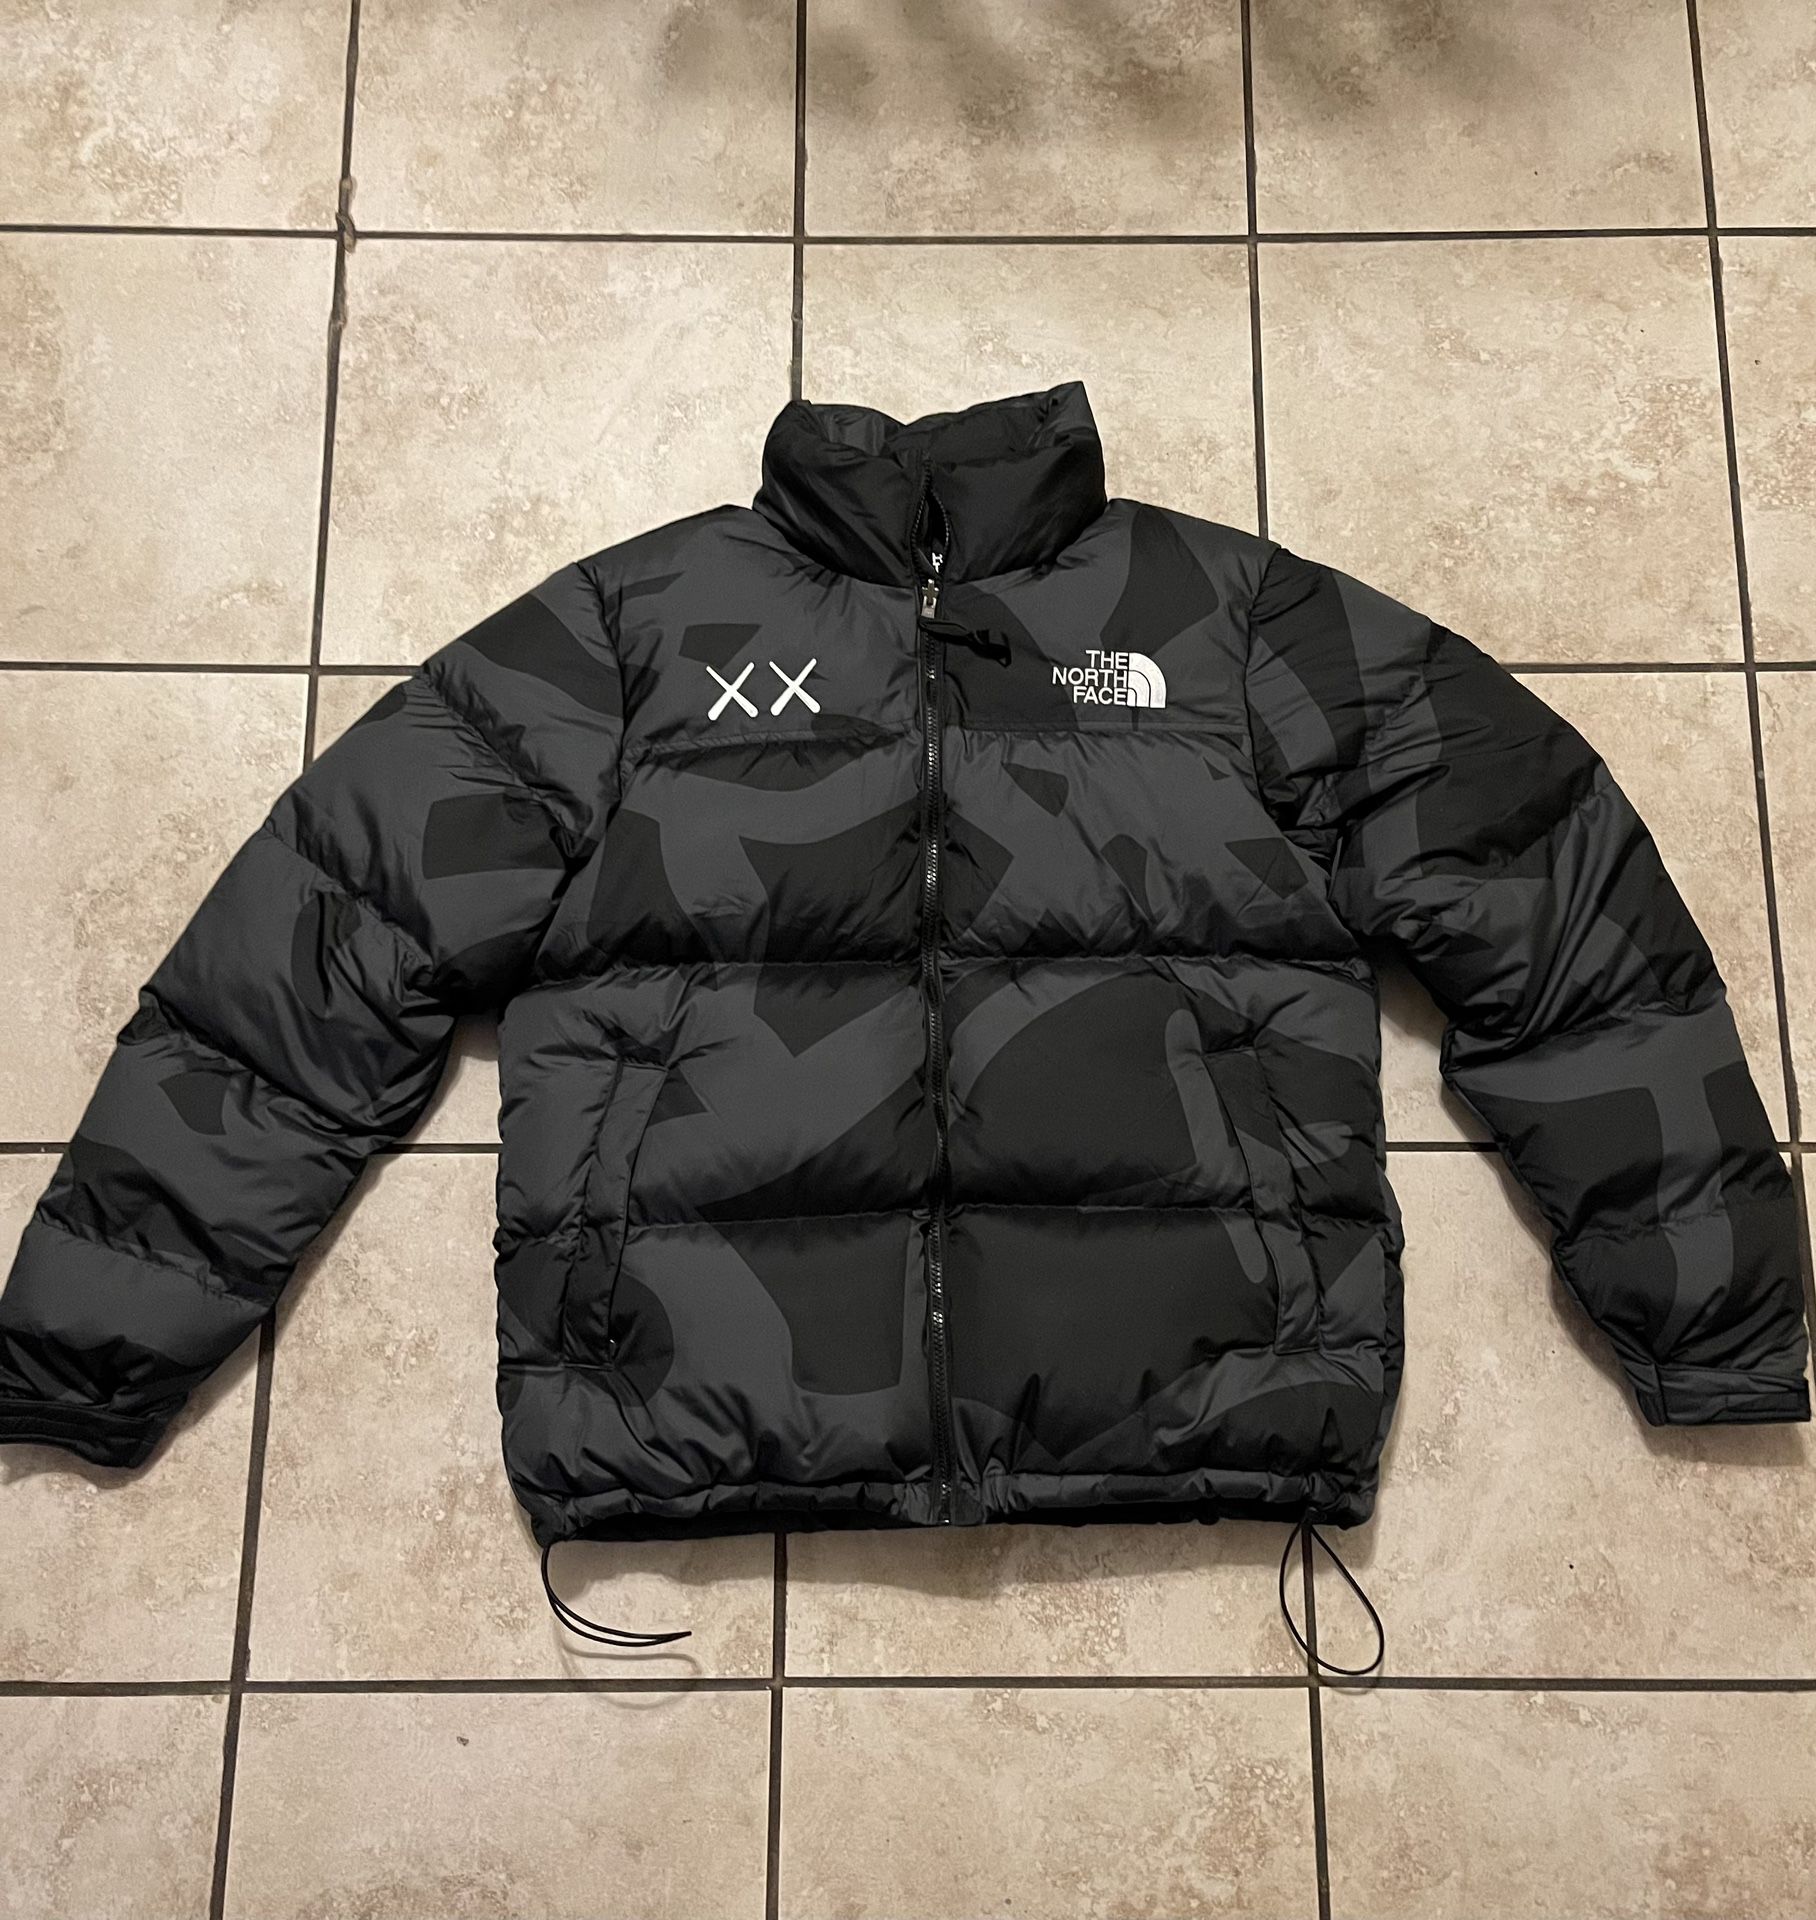 KAWS x The North Face Retro 1996 Nuptse Jacket for Sale in Los